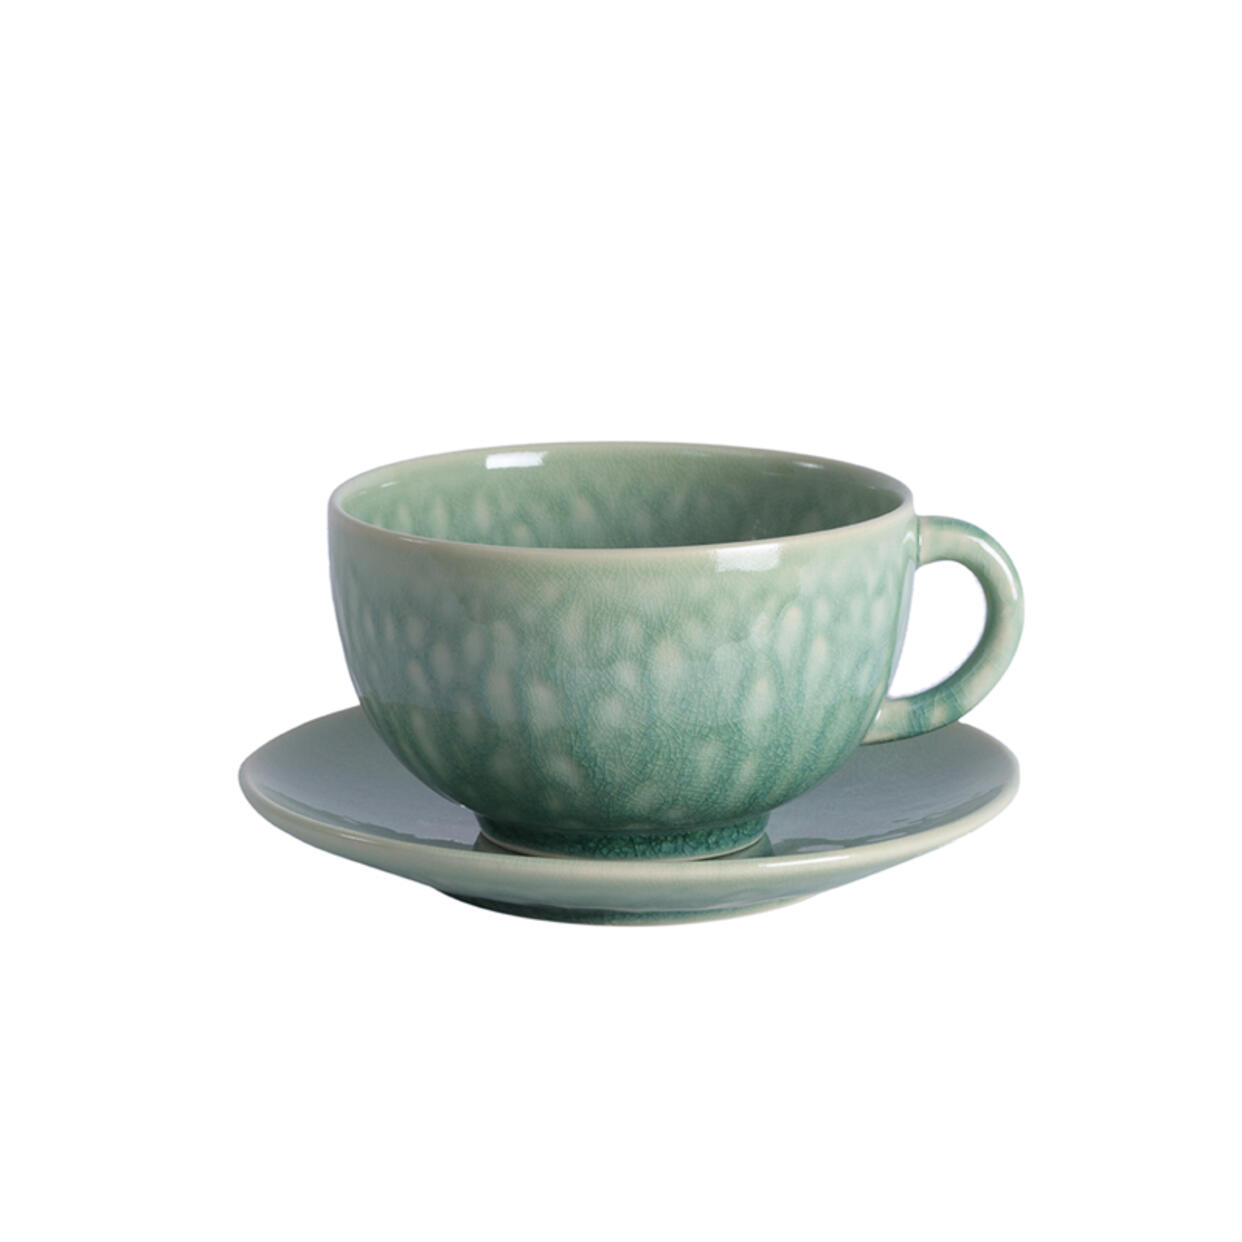 cup & saucer - l tourron jade ceramic manufacturer